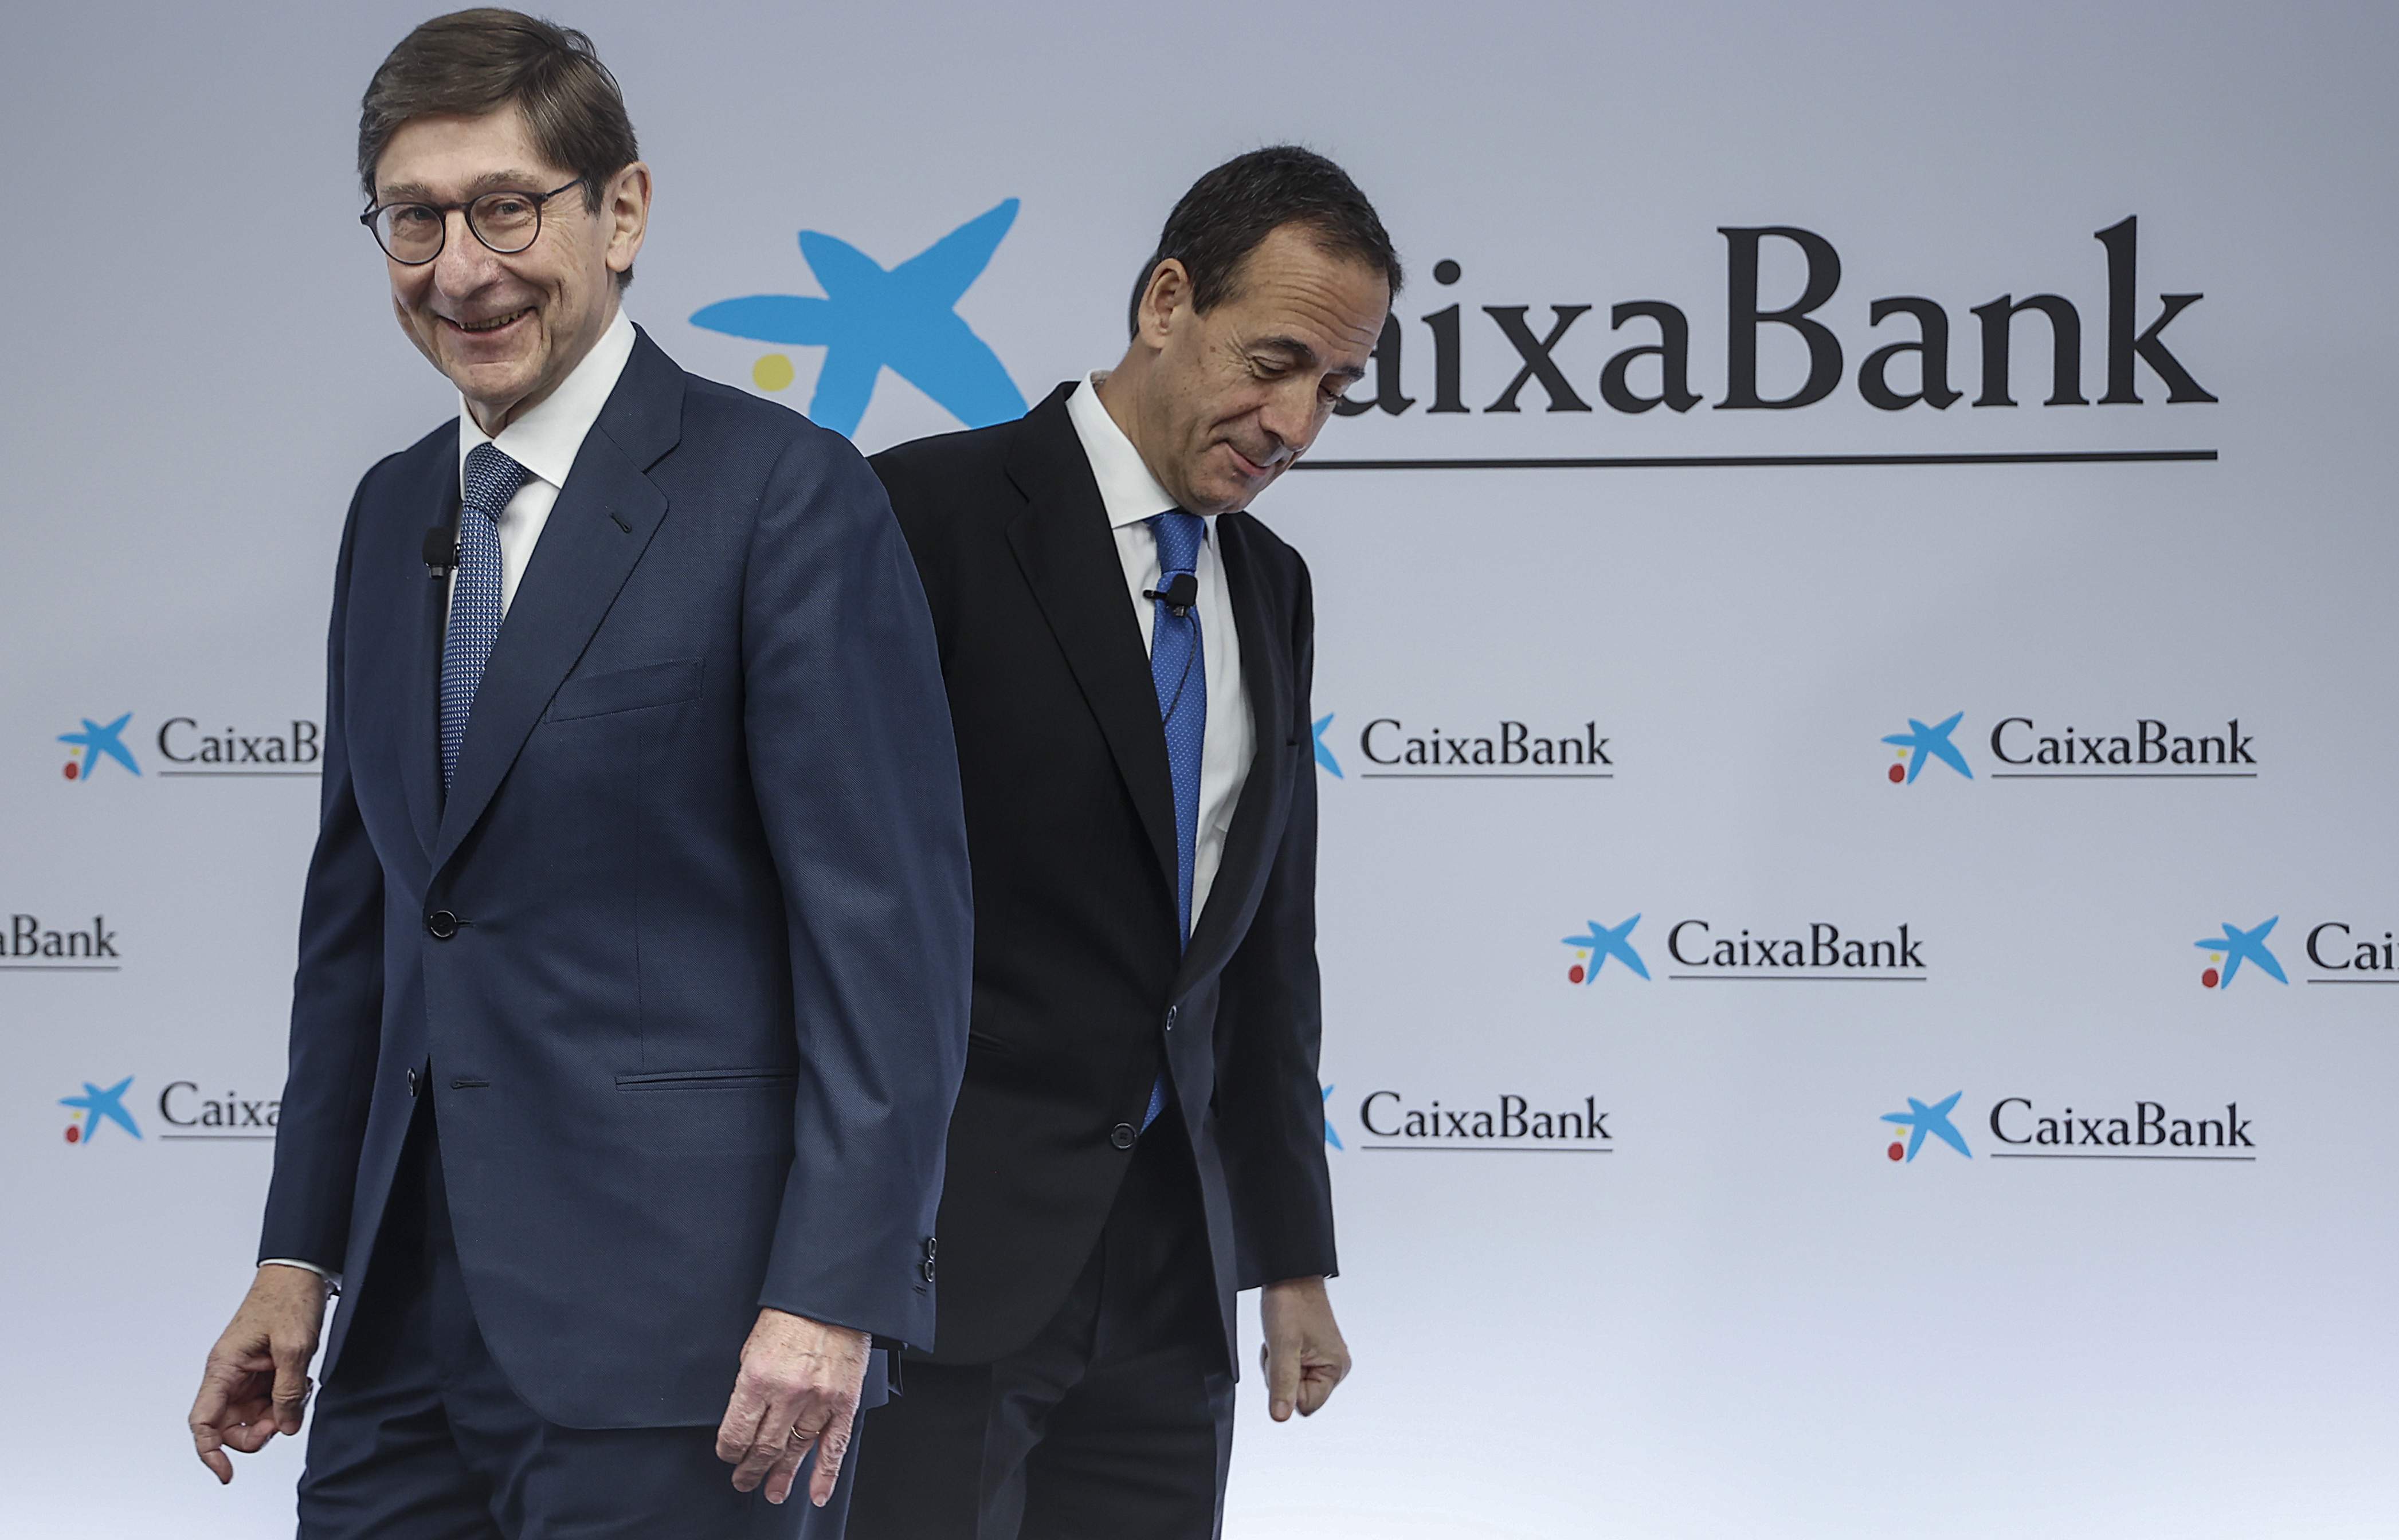 La nueva subida salarial en la cúpula de CaixaBank pone a prueba a Carlos Cuerpo